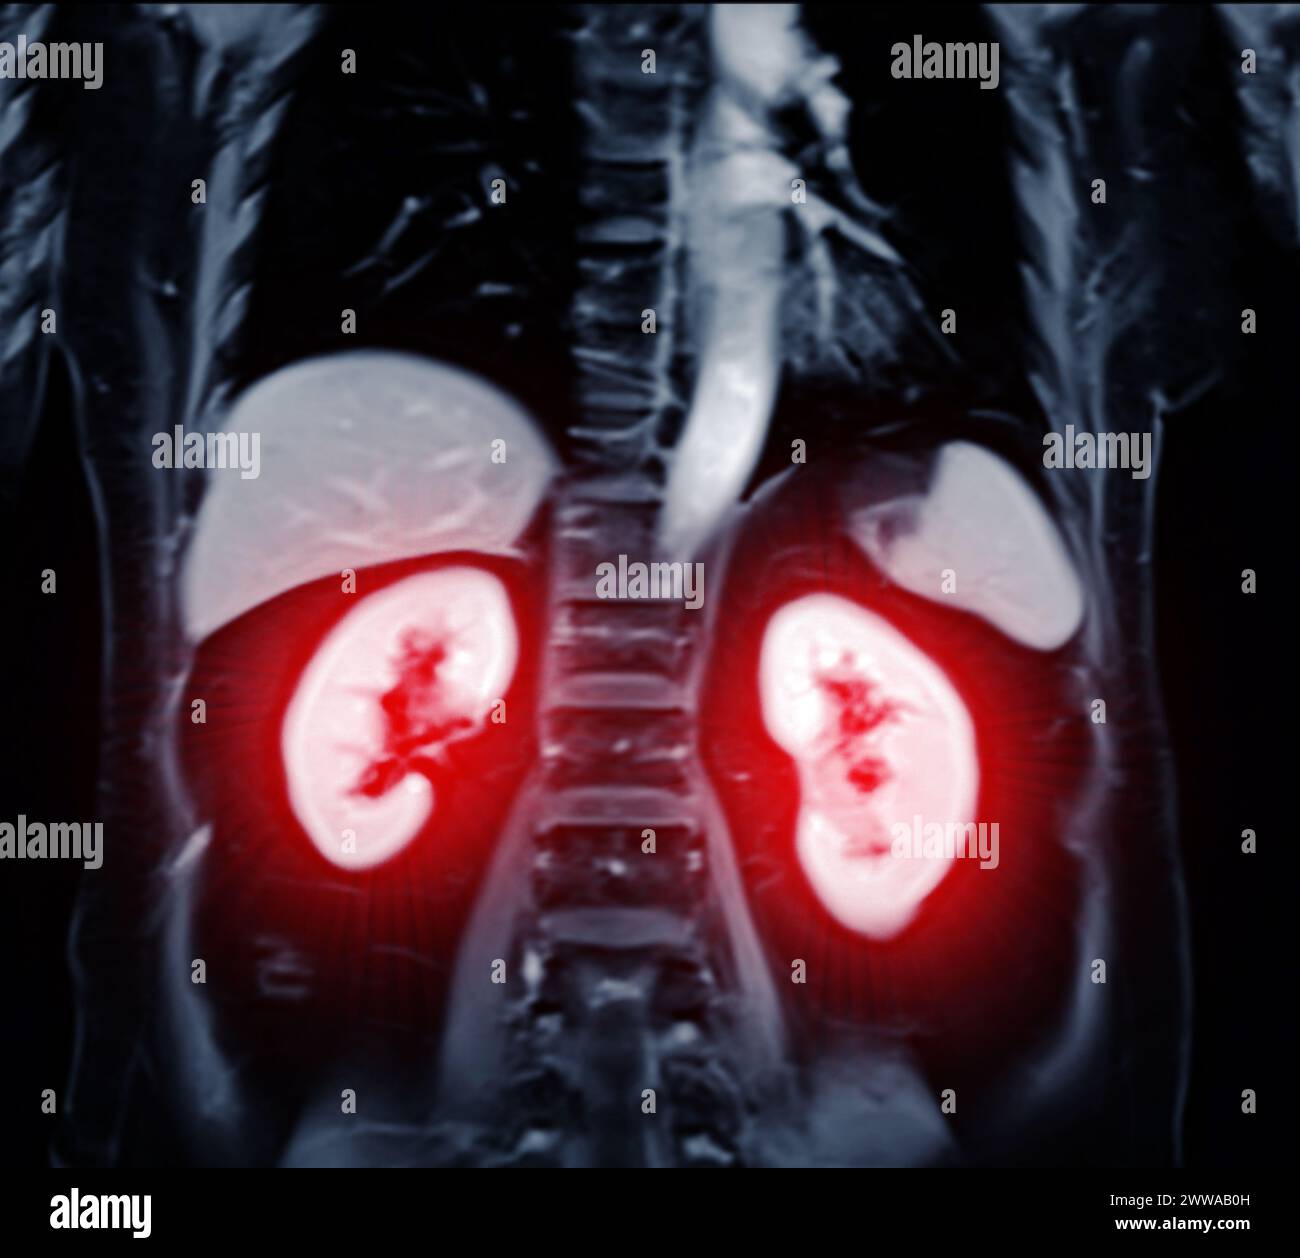 La risonanza magnetica della vista coronale dell'addome superiore è una tecnica di imaging non invasiva che fornisce immagini dettagliate di organi come fegato, pancreas e reni. Foto Stock